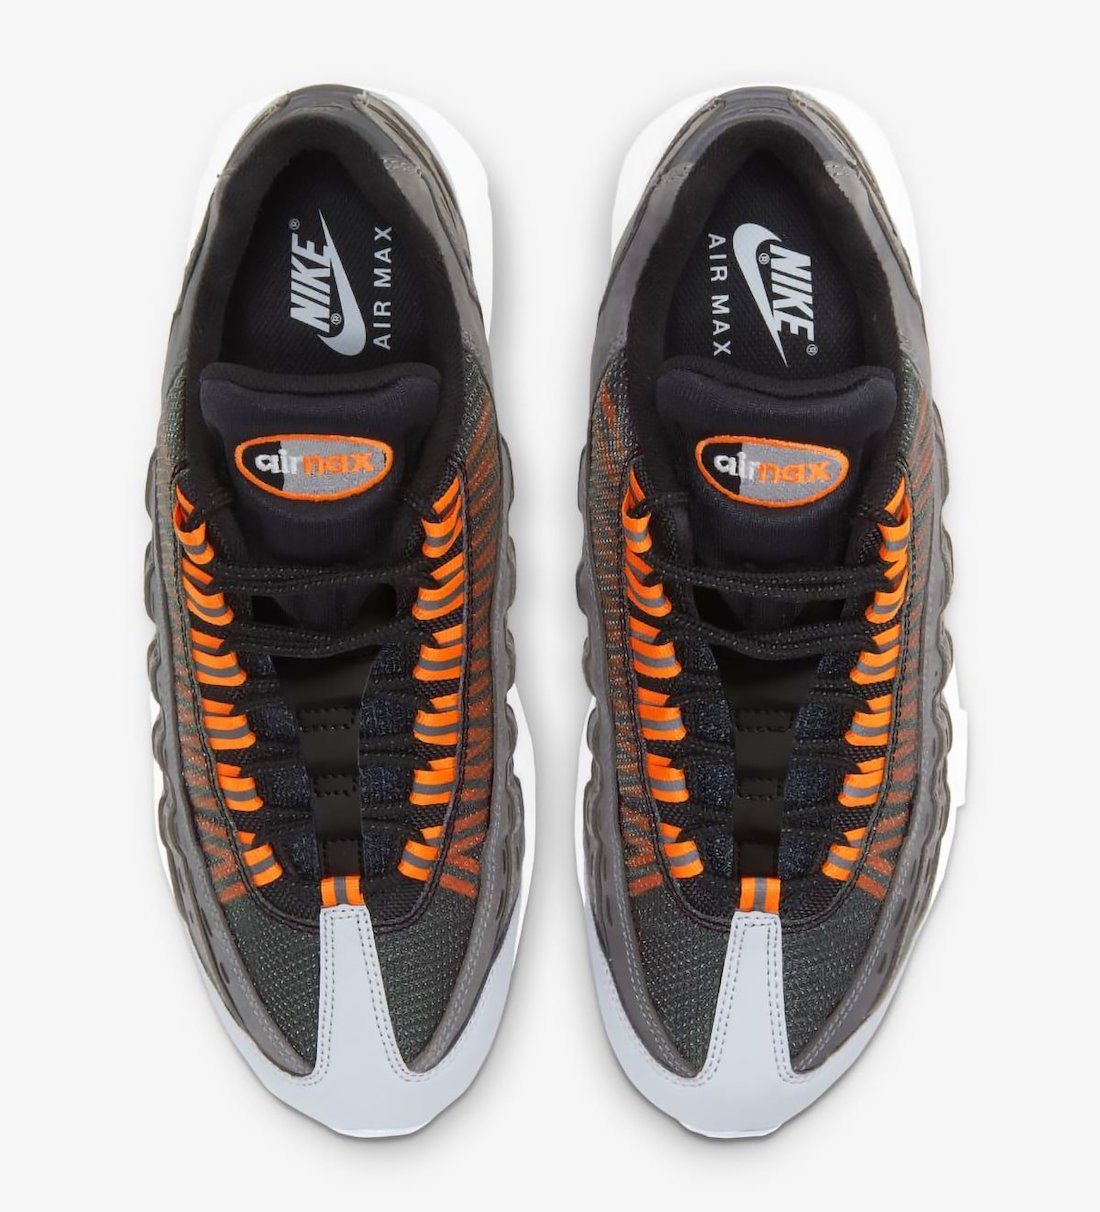 Kim Jones Nike Air Max 95 Black Total Orange Release Date